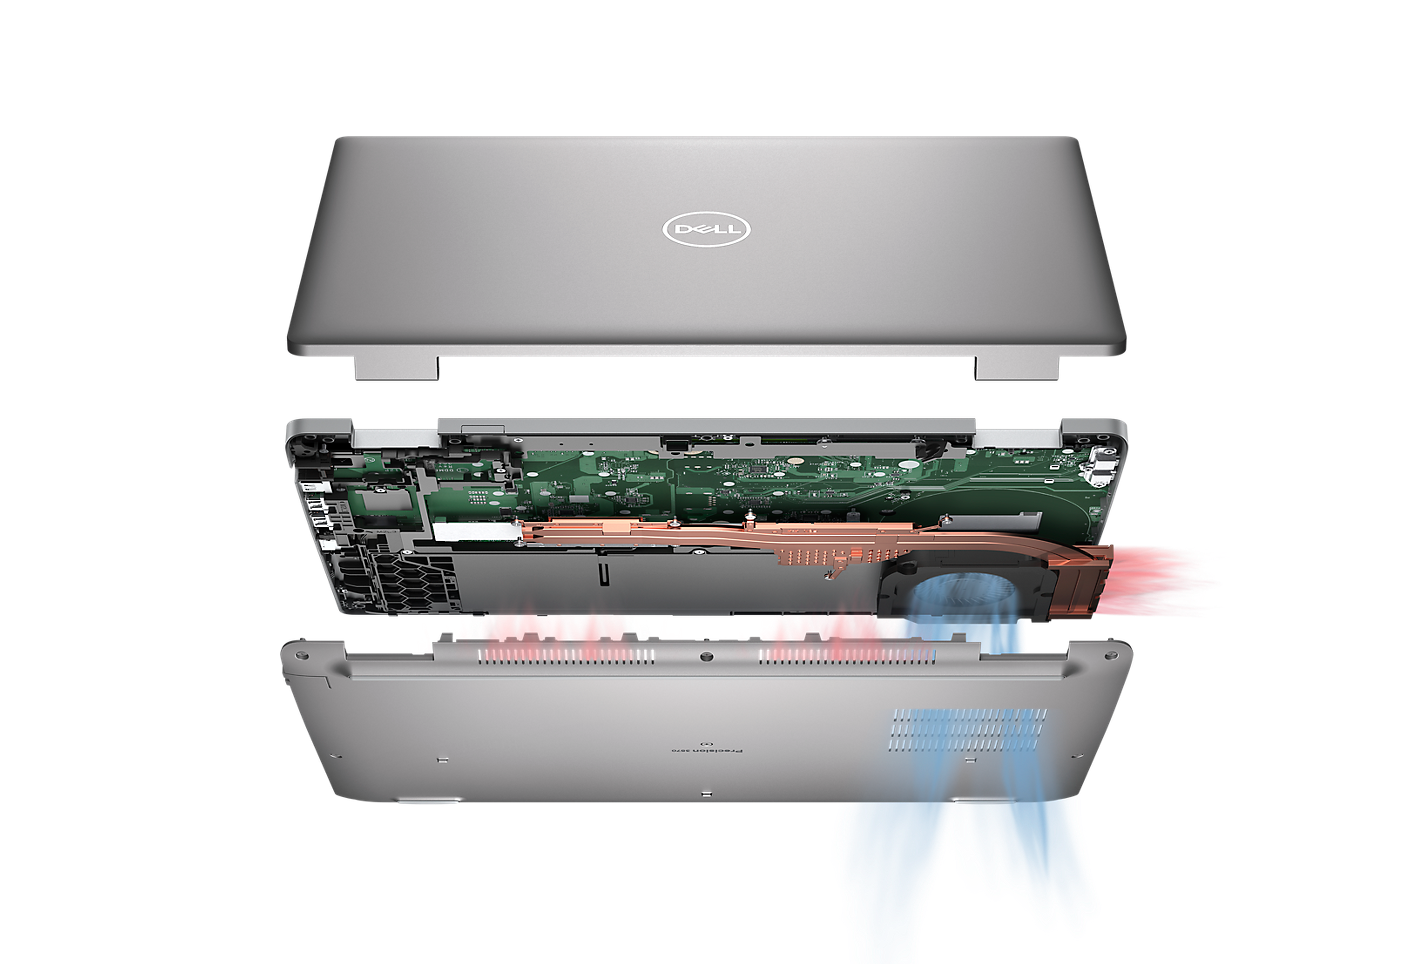 Notebook Dell Precision 3570 má oproti předchozí generaci podstatně větší ventilátor s duálním protilehlým výstupem (DOO) a 2 tepelné trubice, které spolehlivě odvádějí teplo od vnitřních komponentů.